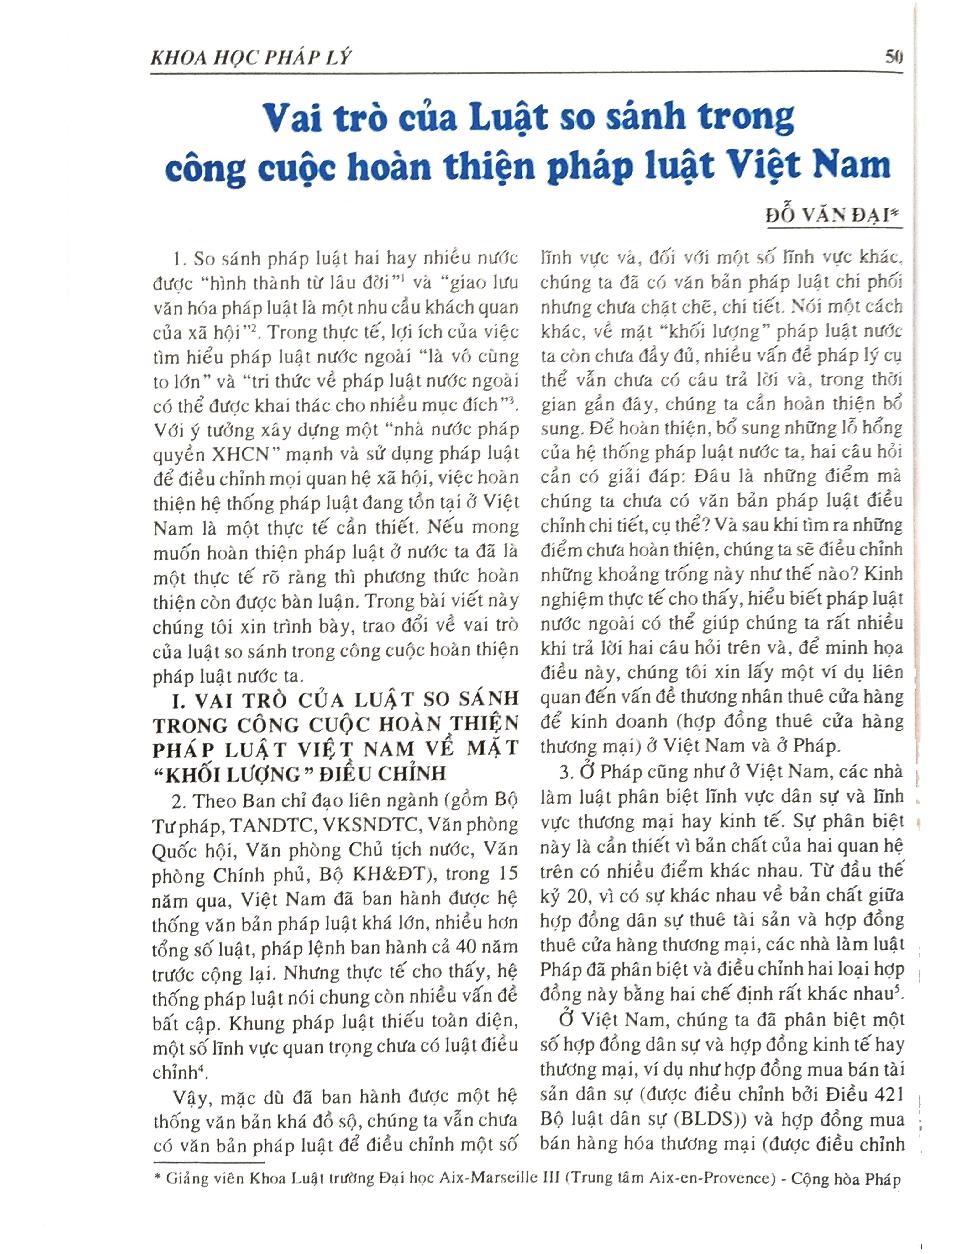 Vai trò của Luật so sánh trong công cuộc hoàn thiện pháp luật Việt Nam